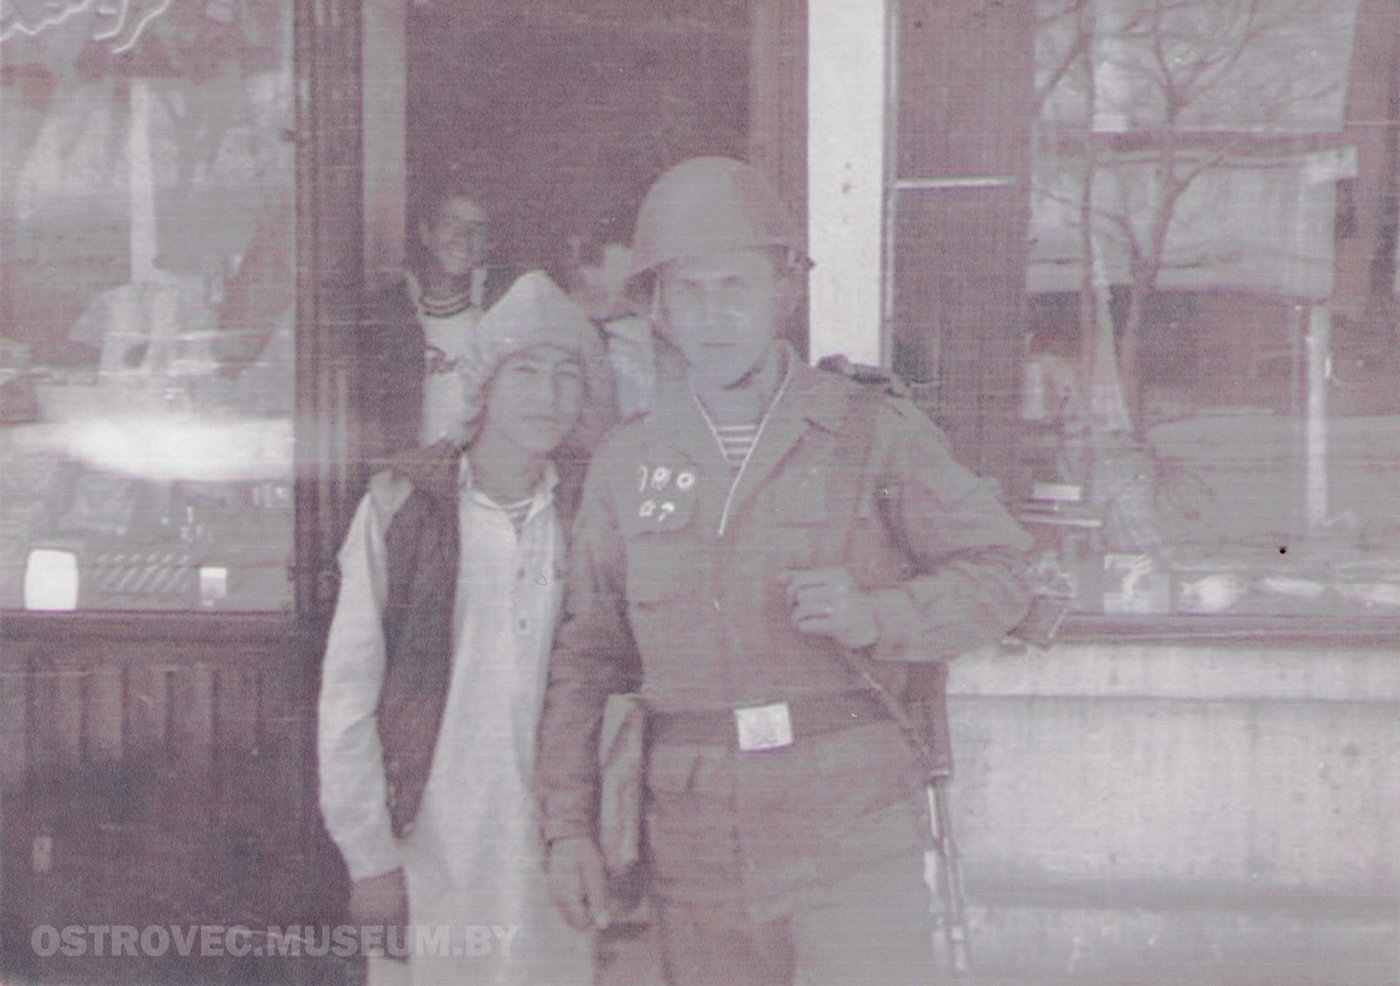 Олизар Владимир Марьянович у дверей магазина с афганским мальчиком-подростком в традиционной длинной рубахе. Афганистан, 1988 г.